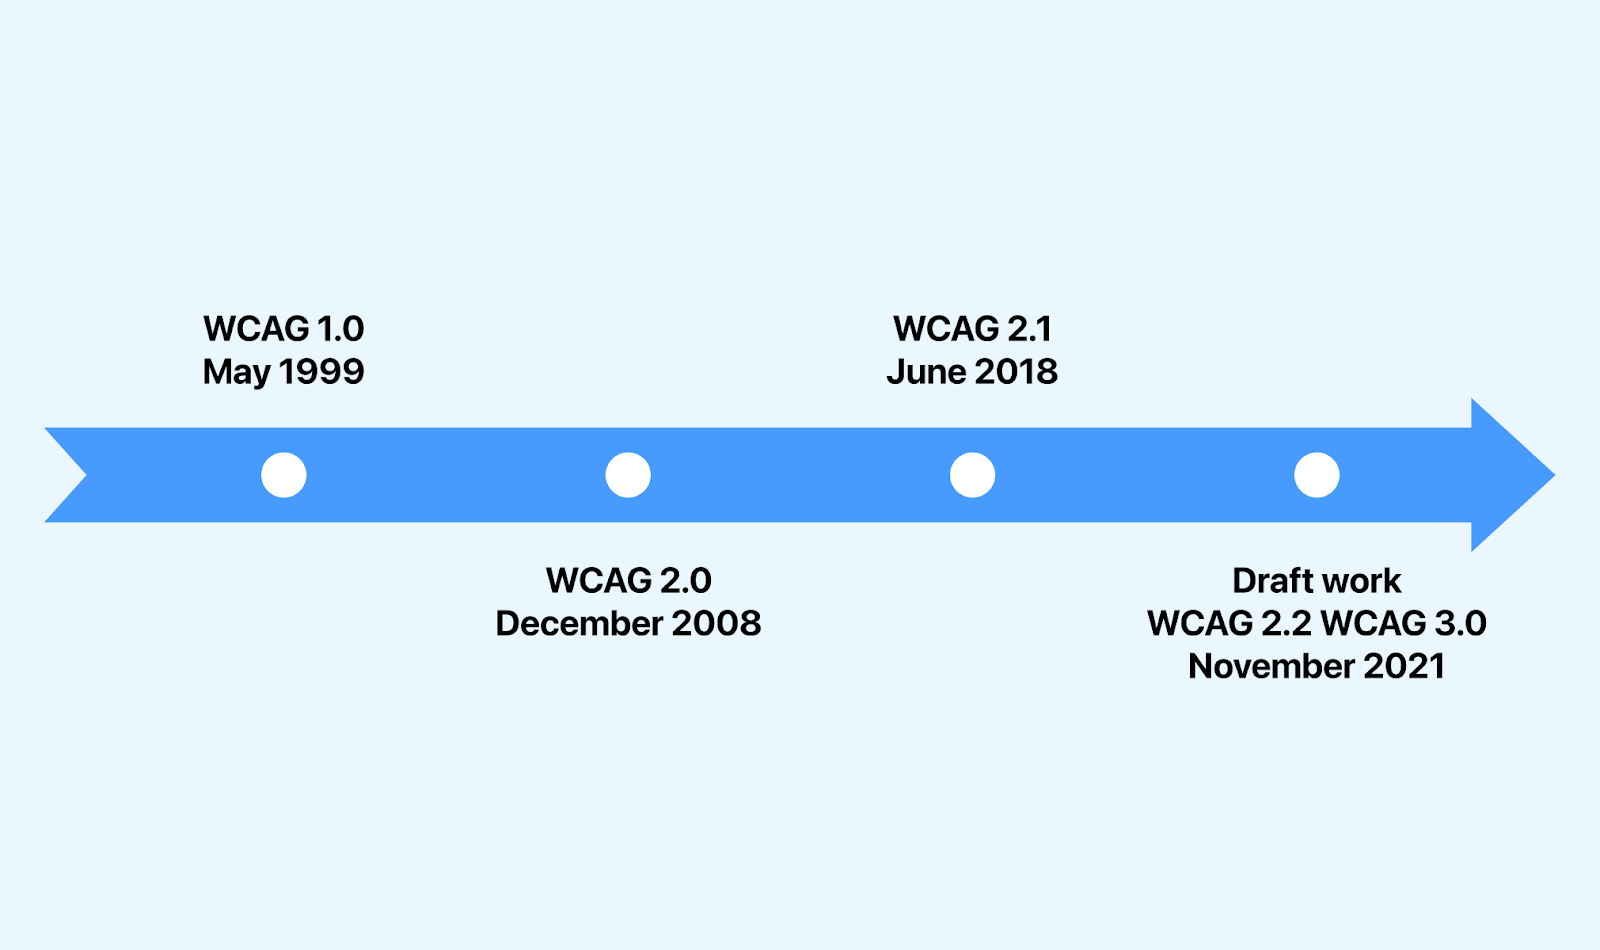 WCAG Evolution and Timeline